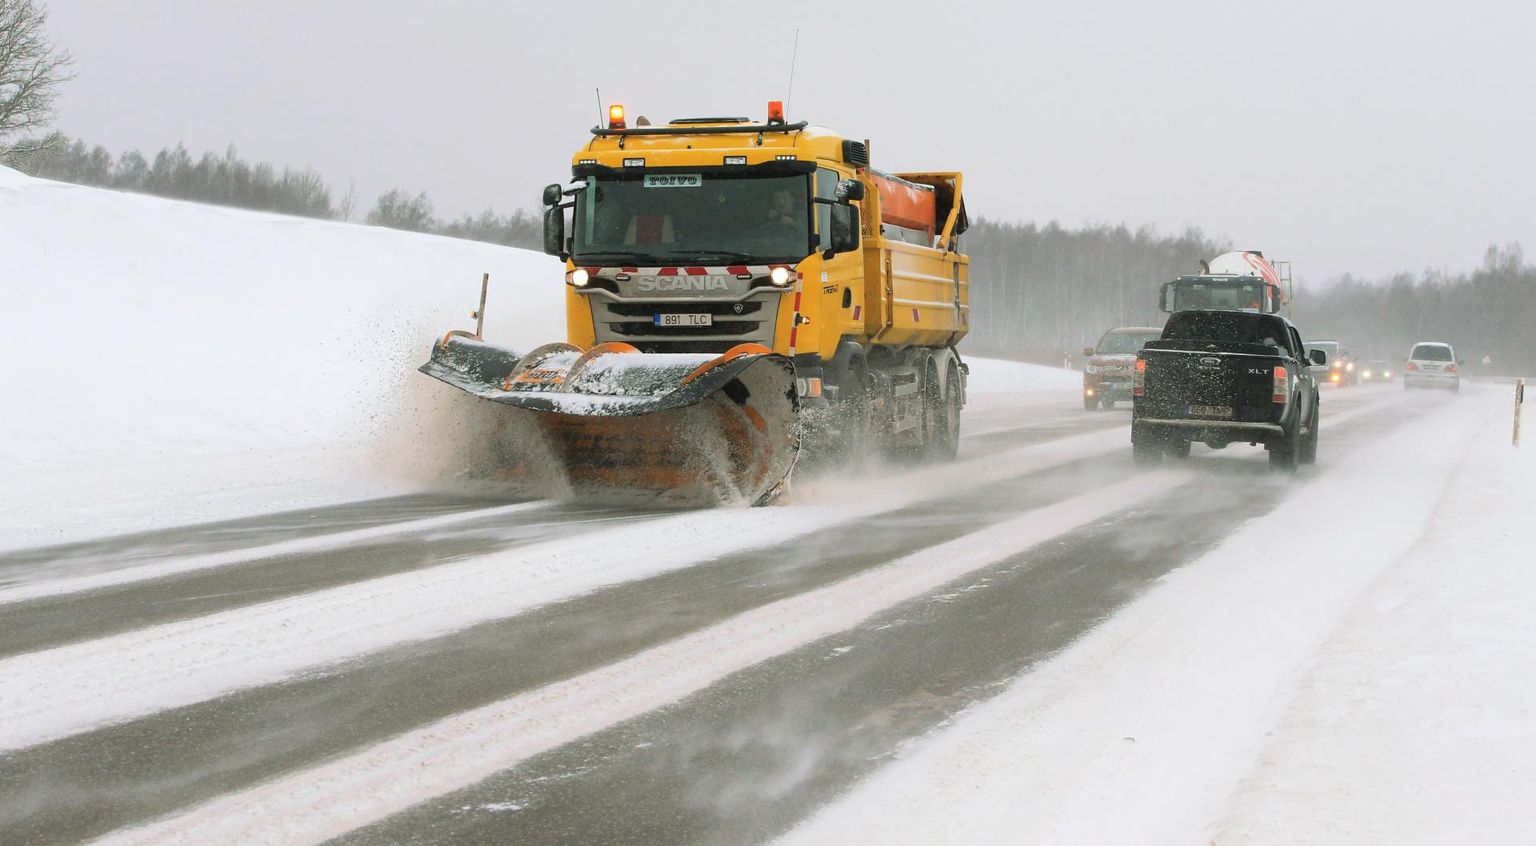 Reedel puhus vinge tuul ja tuiskas lund, sahk lükkas Tartu–Jõgeva–Aravete maanteed lumest puhtaks.